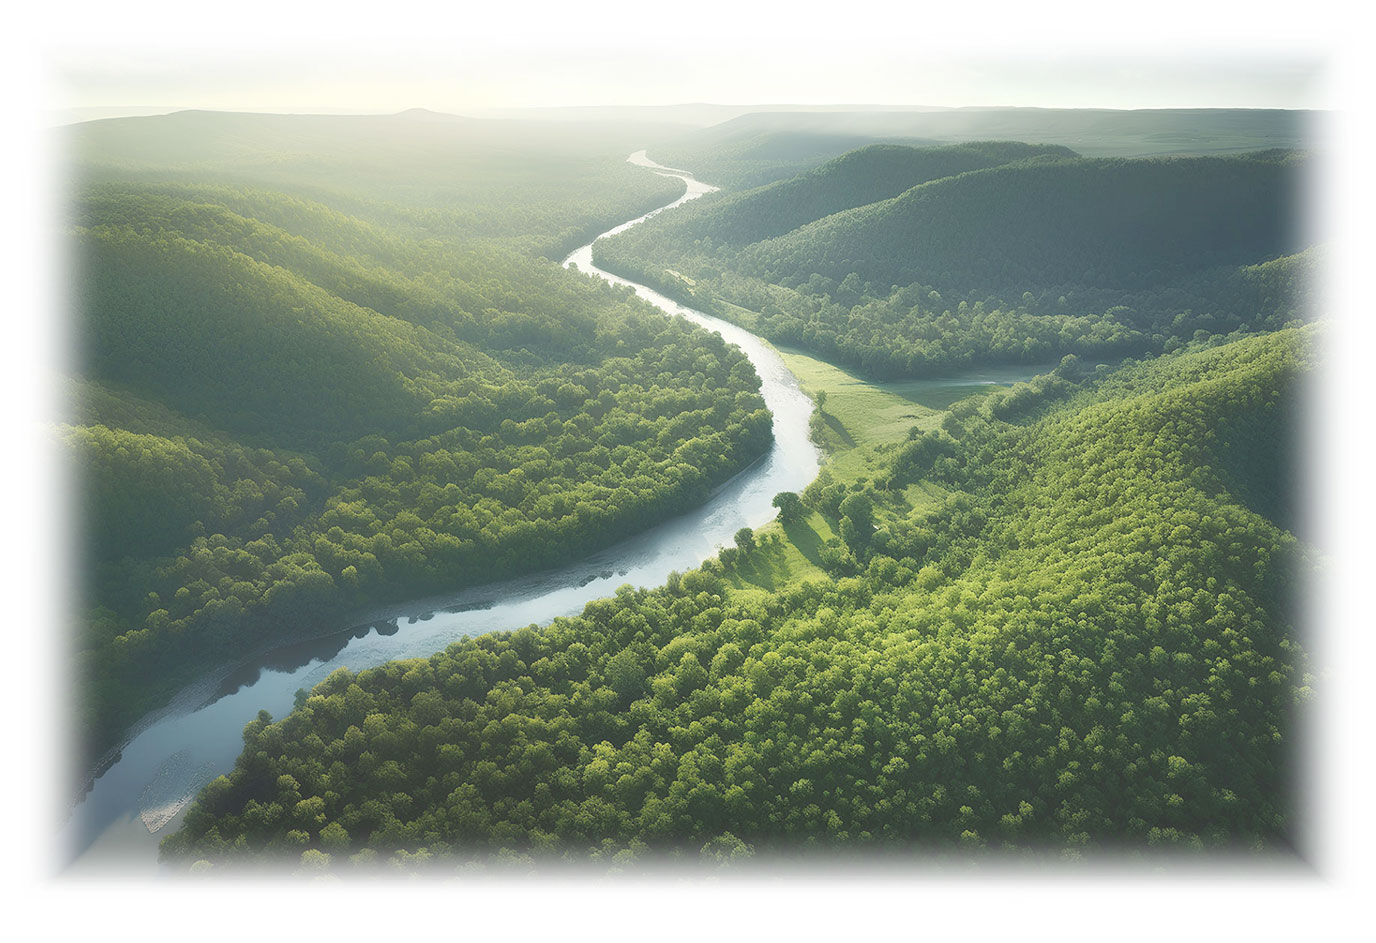 Ein schlängelnder Fluss in einer grünen Waldlandschaft. Es versinnbildlicht Deinen Lebensfluss.